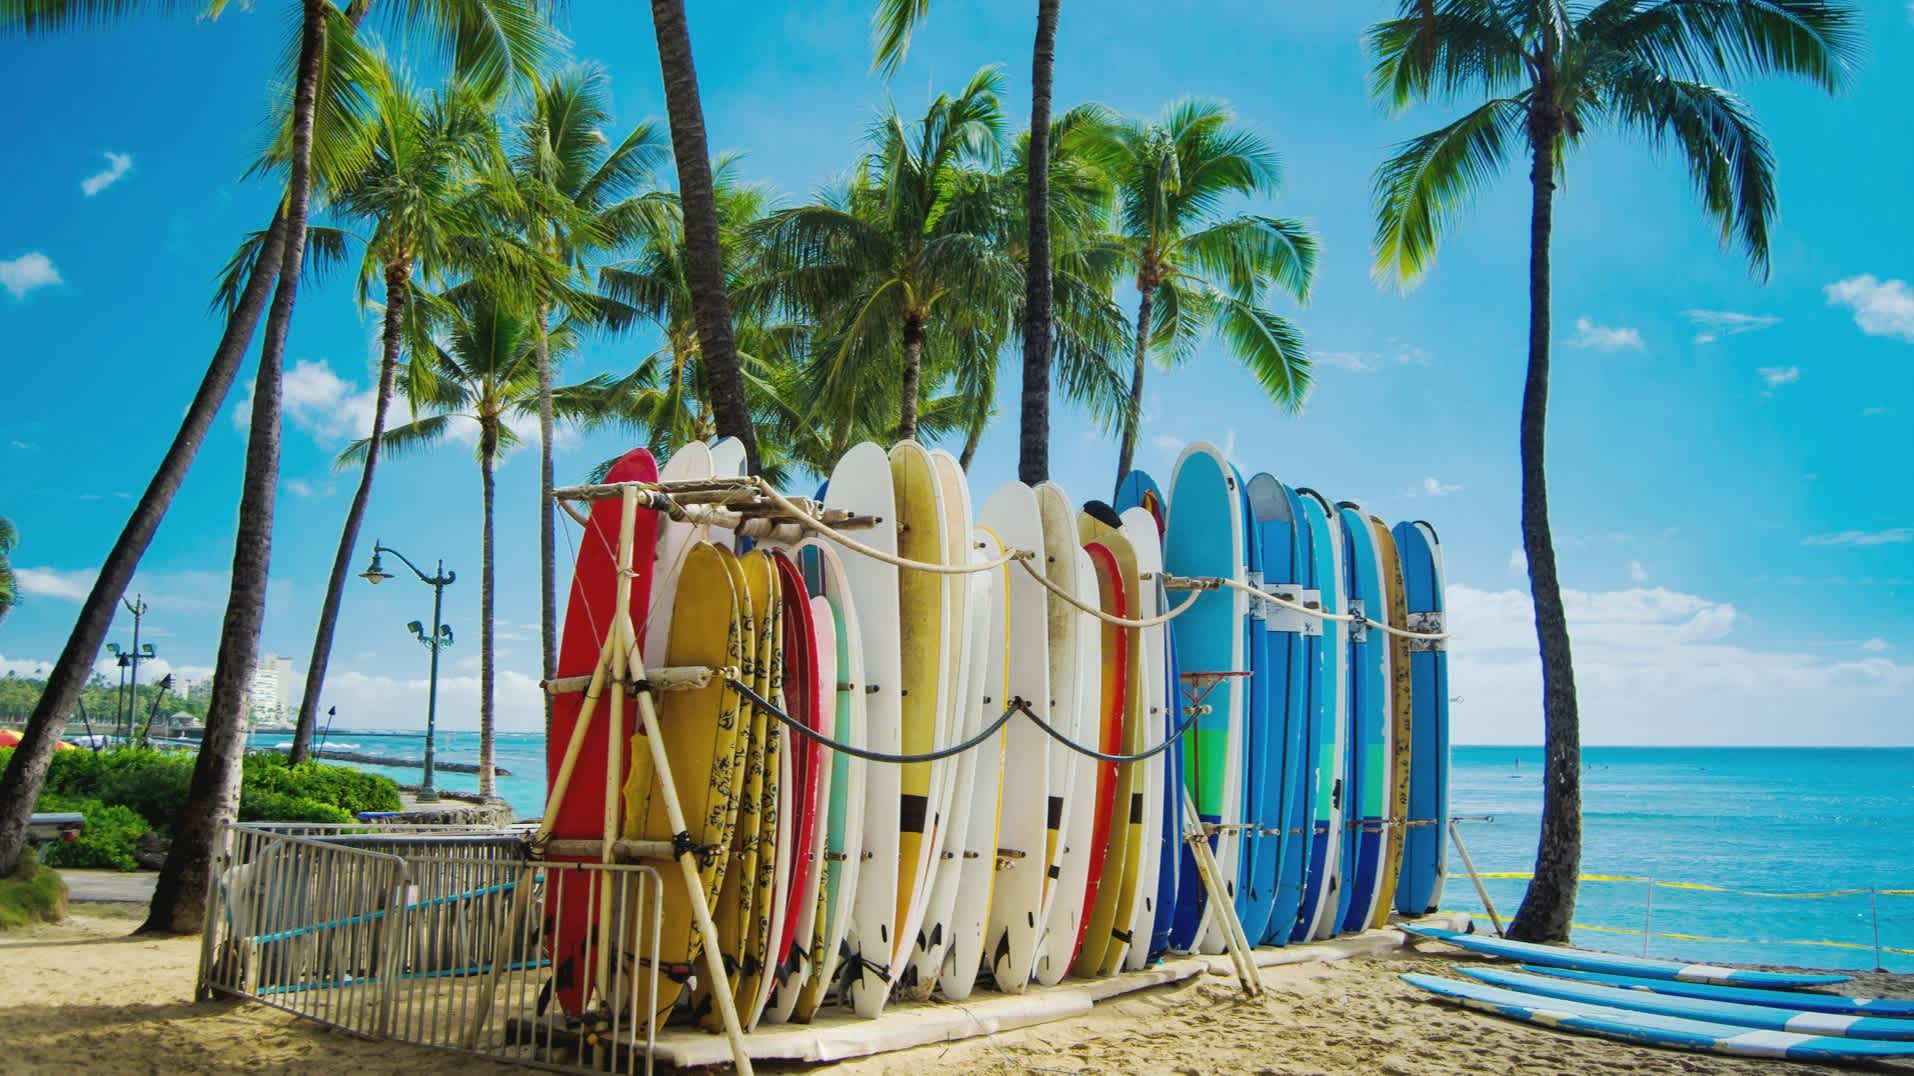 Hawaï, Oahu, palmiers et planches de surf colorées sur la plage de Waikiki.